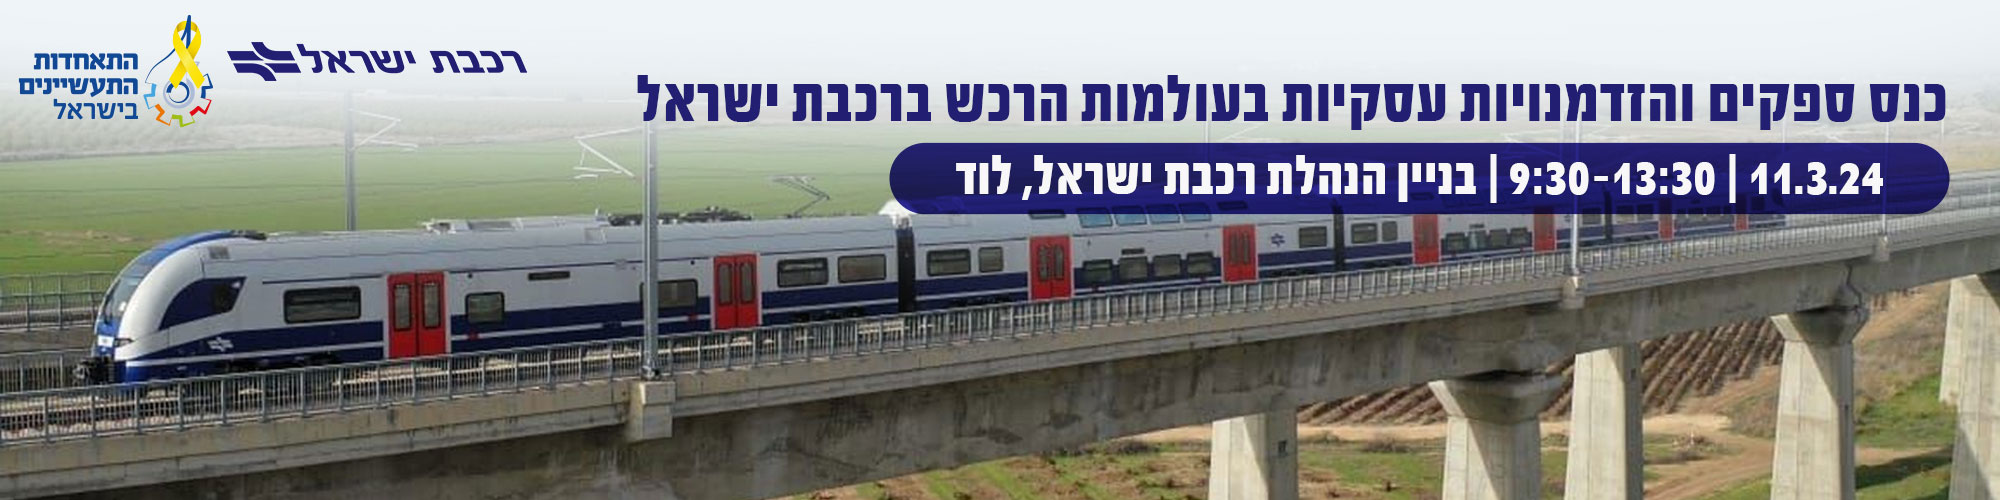 כנס ספקים והזדמנויות עסקיות בעולמות הרכש ברכבת ישראל - 11.3.24